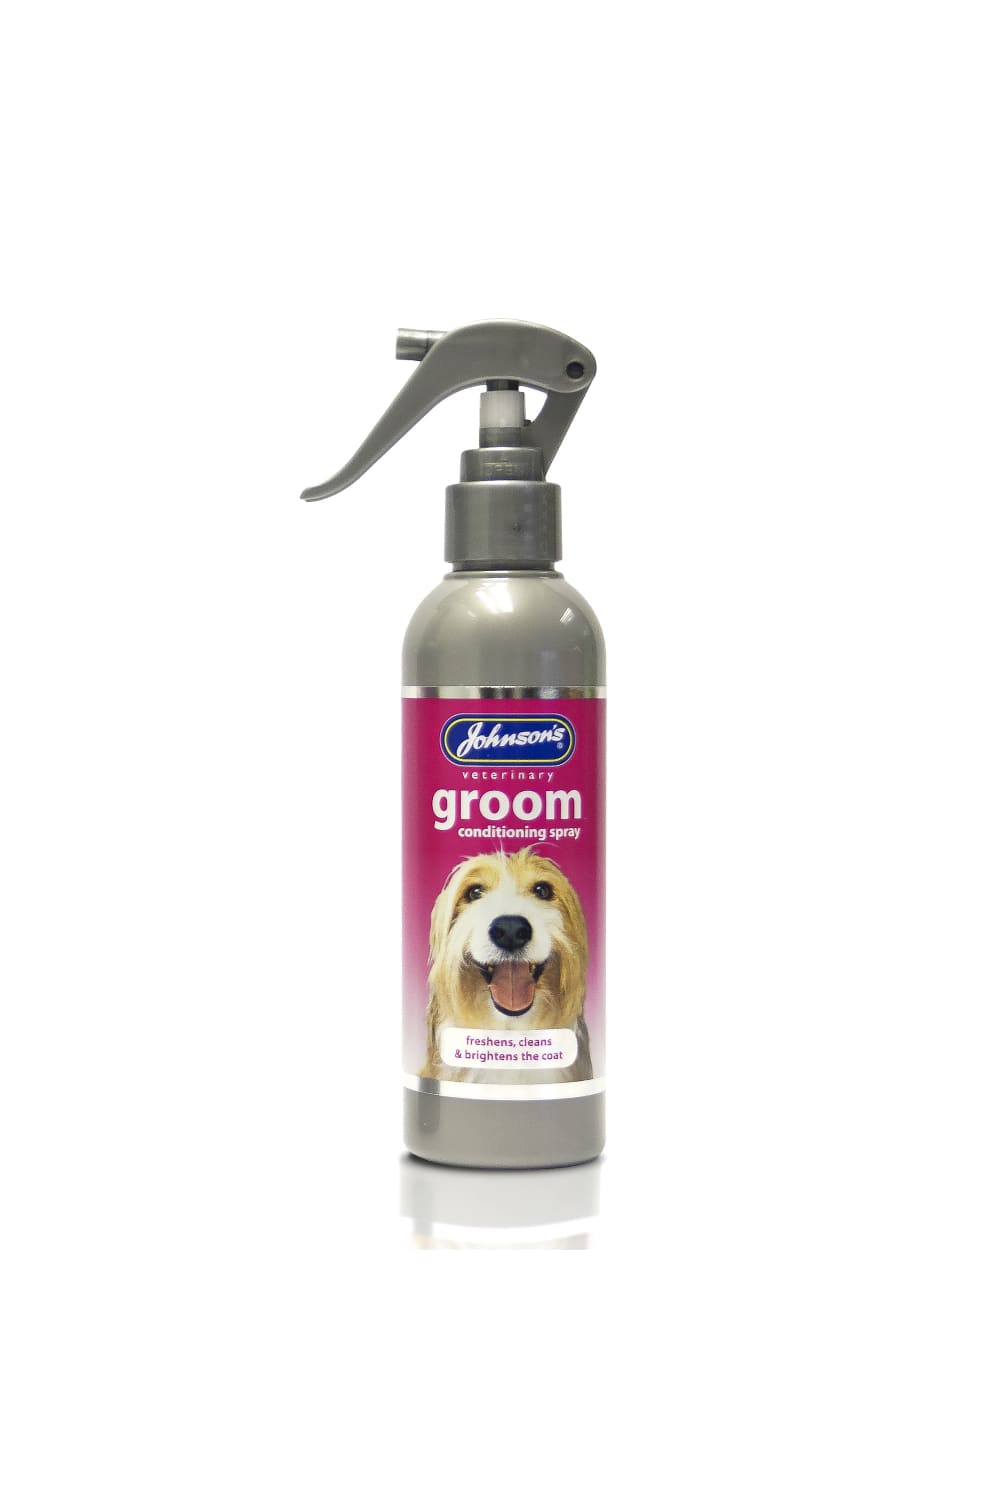 Johnsons Veterinary Groom Conditioning Spray Liquid (May Vary) (5 fl oz)